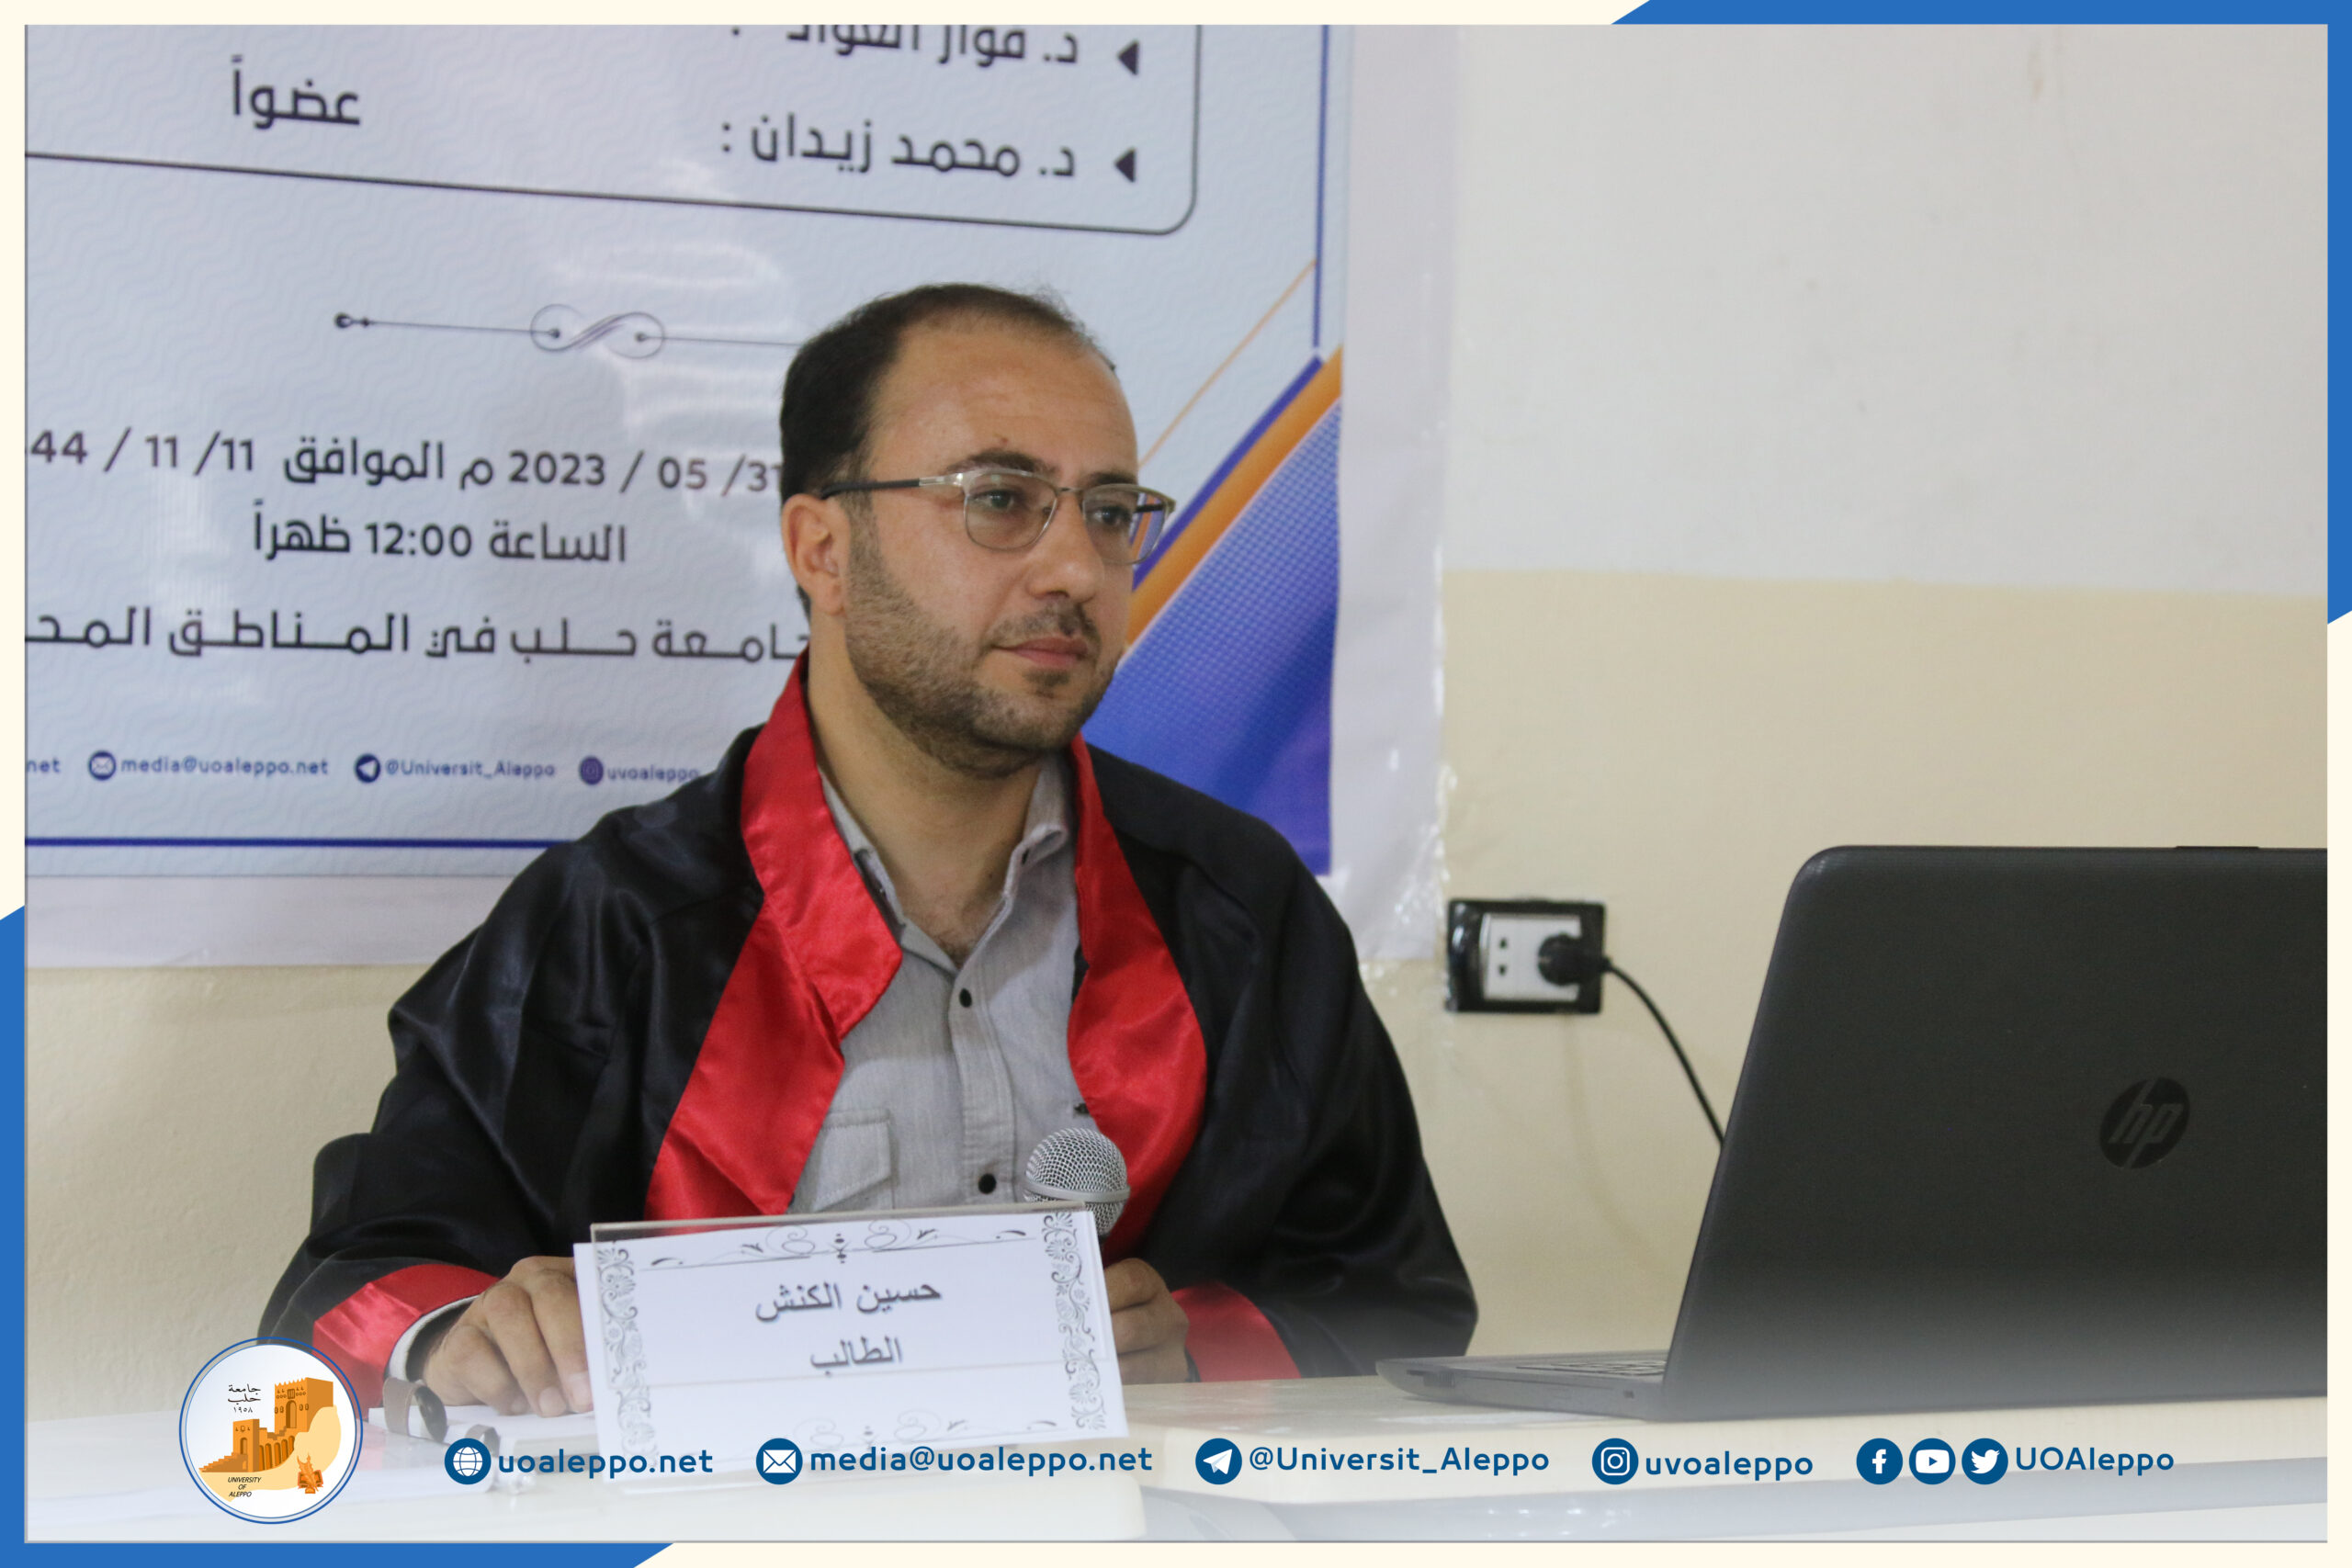 جامعة حلب في المناطق المحرّرة تمنح درجة الماجستير في الإرشاد النفسي